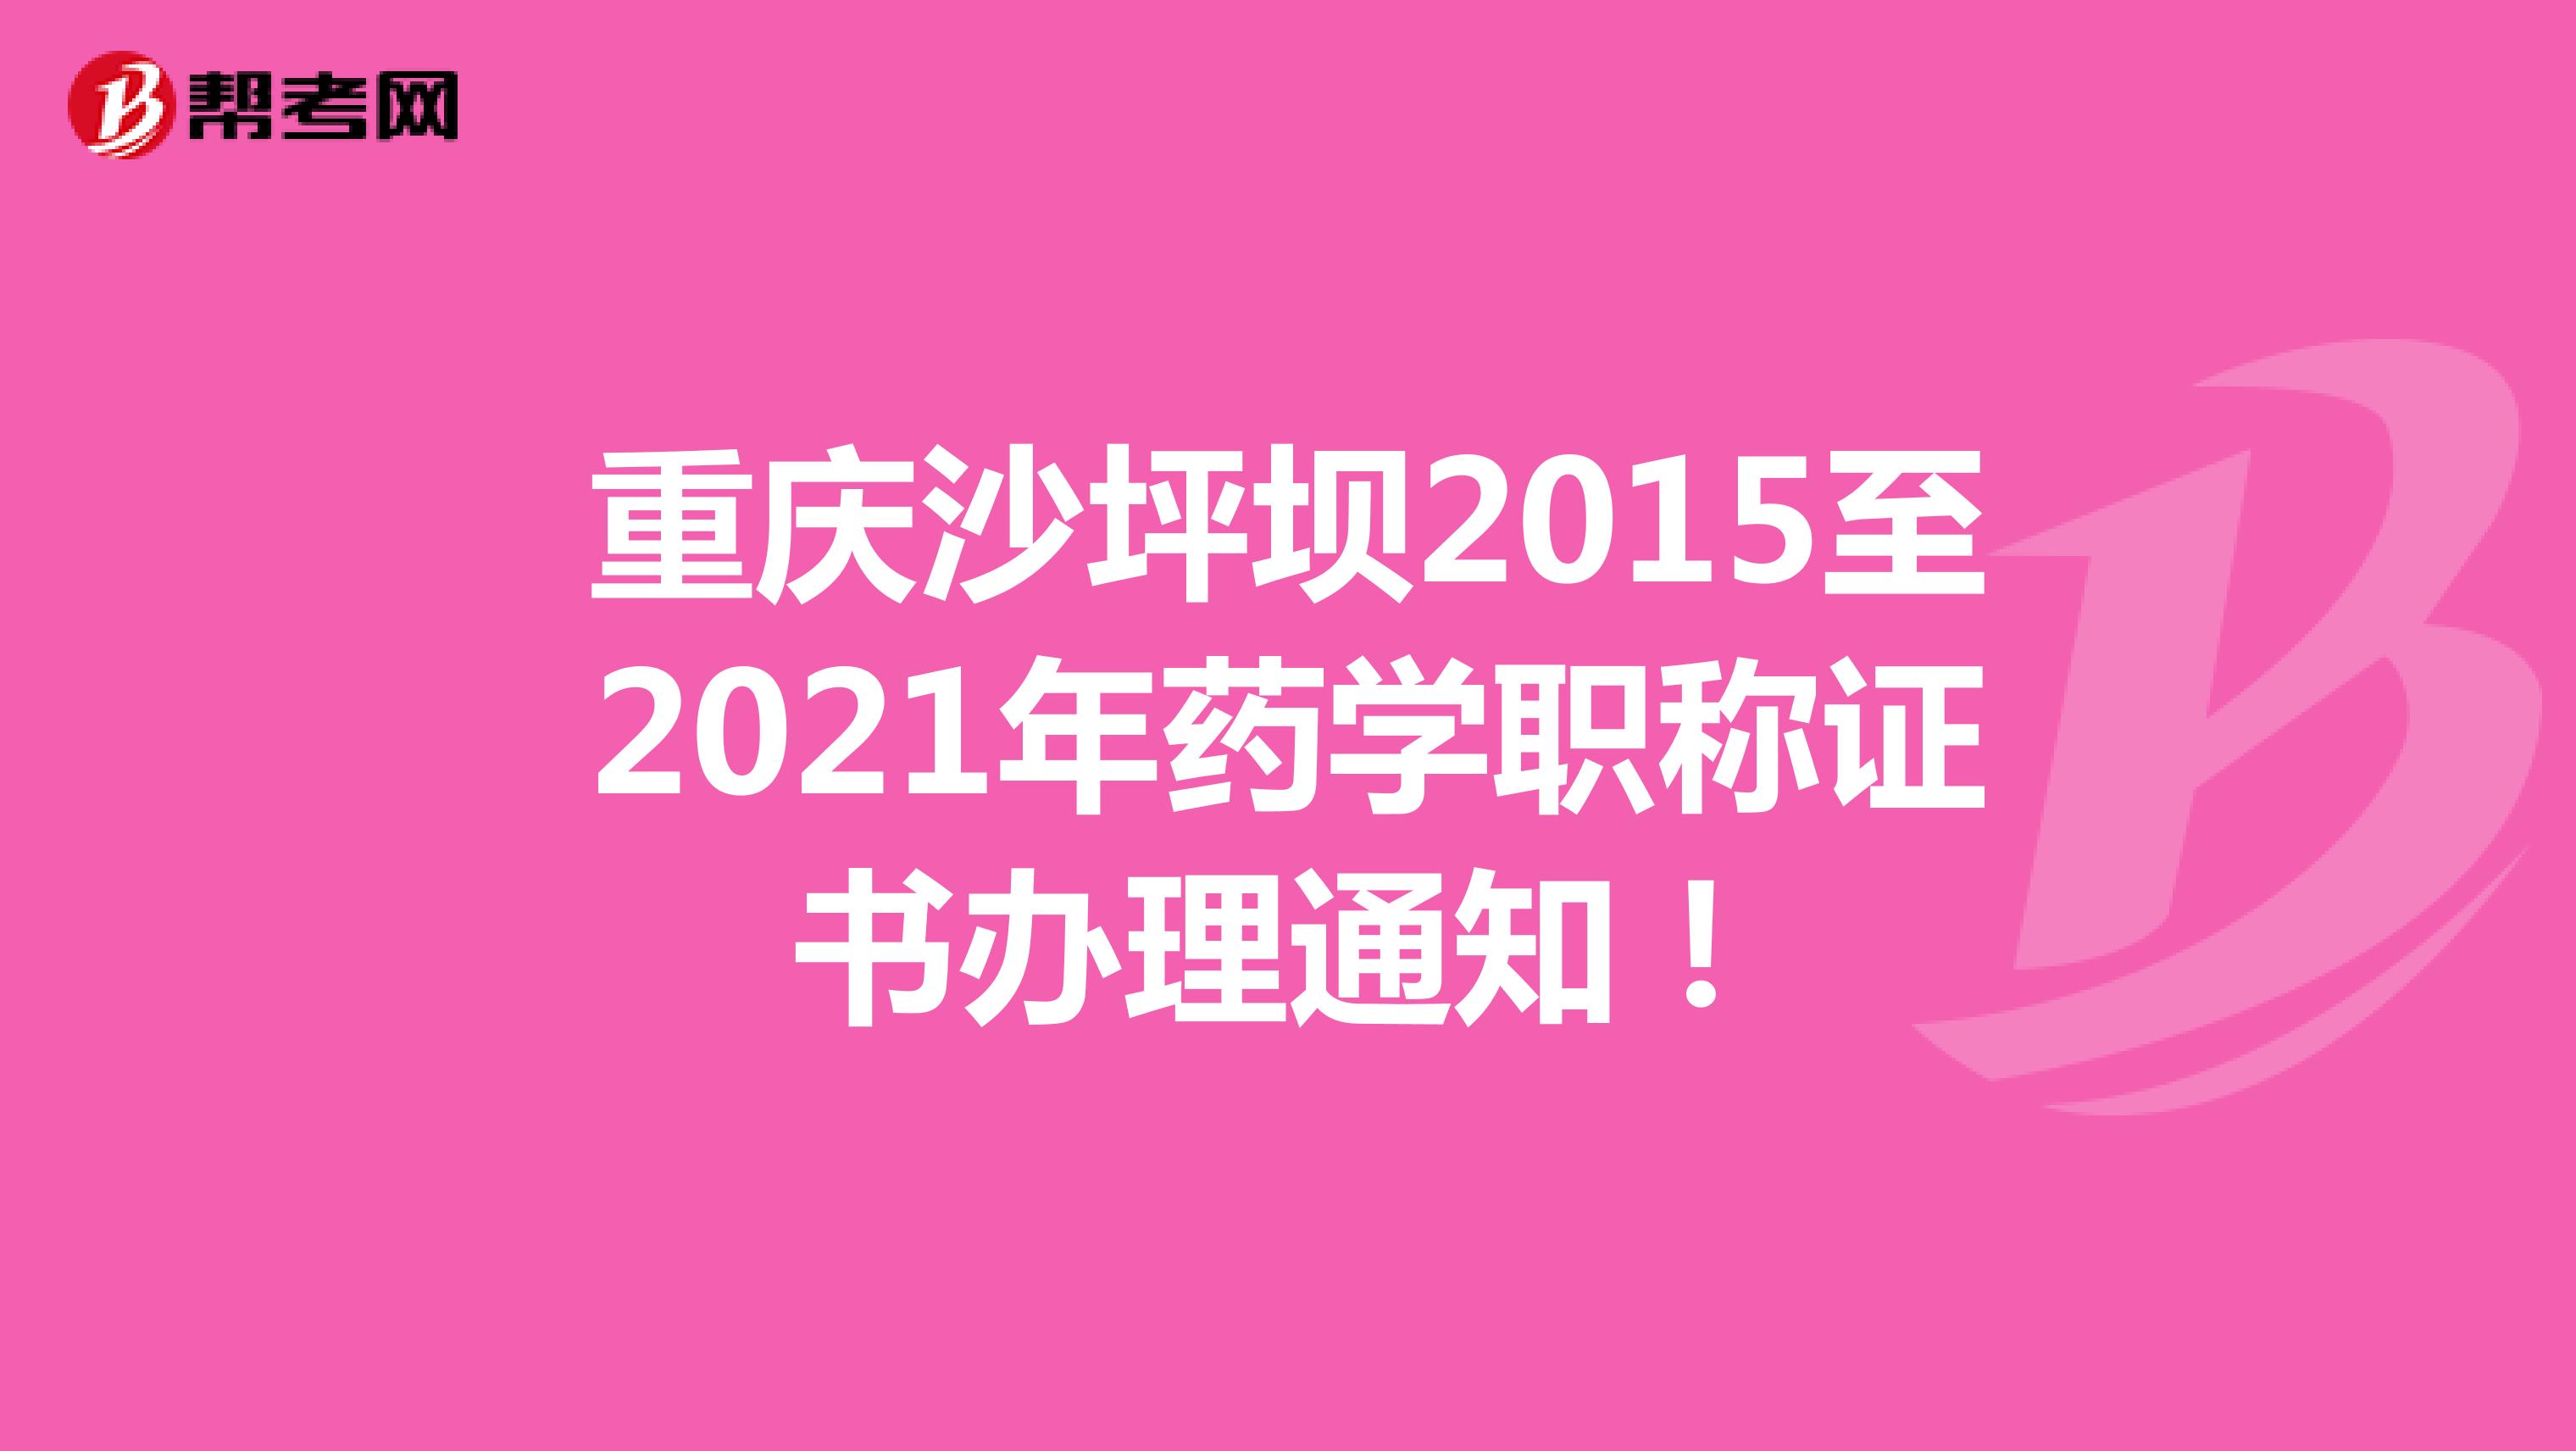 重庆沙坪坝2015至2021年药学职称证书办理通知！